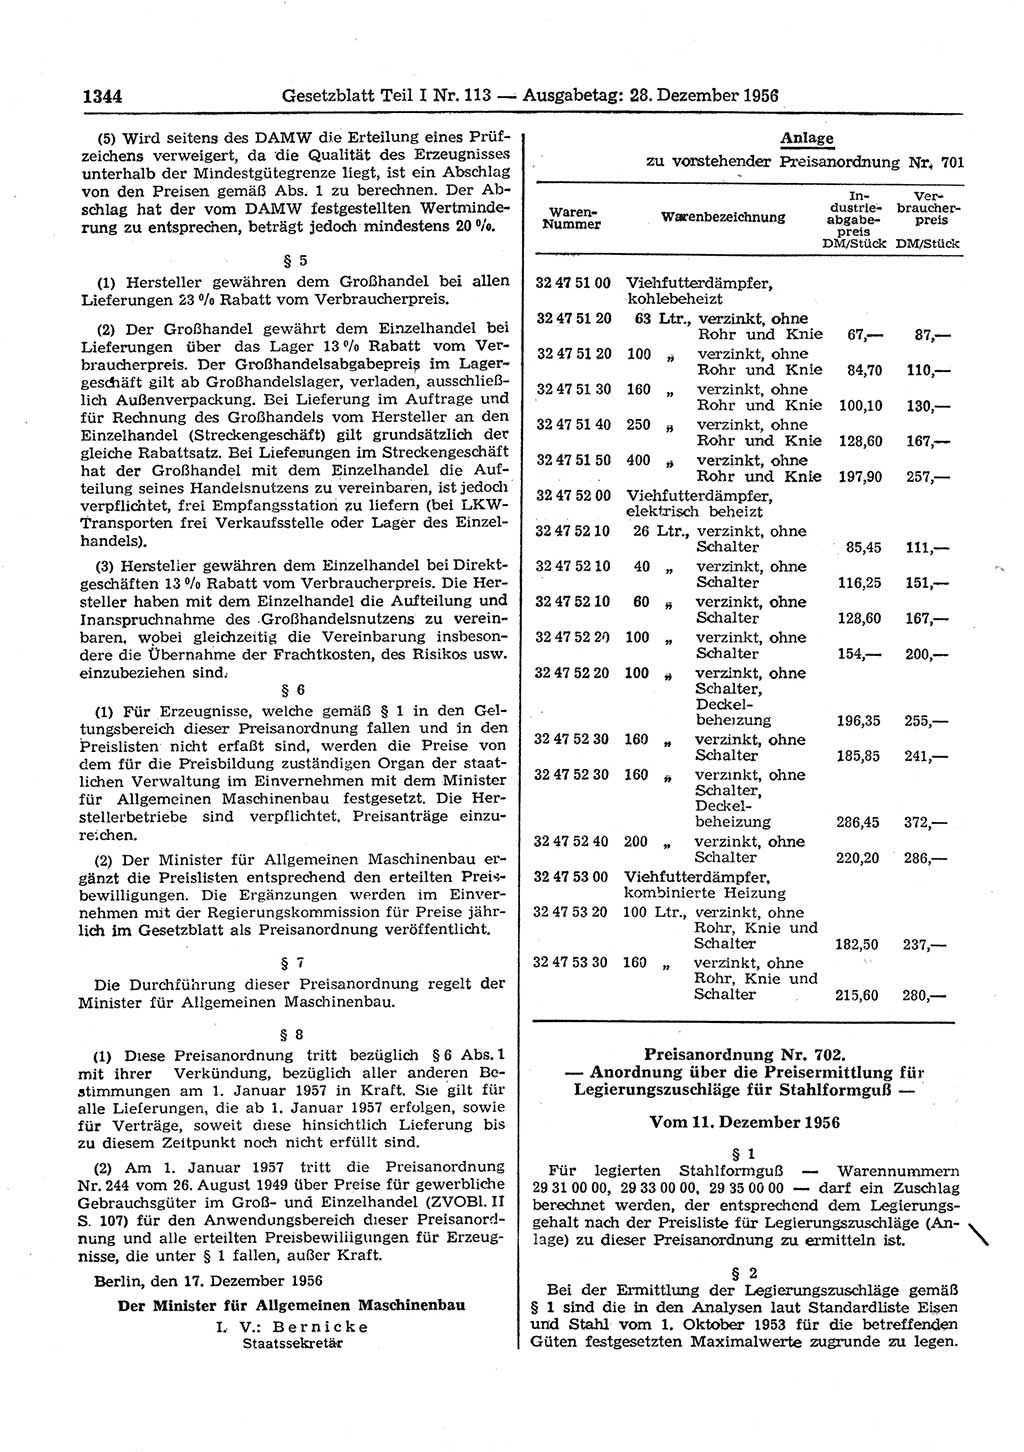 Gesetzblatt (GBl.) der Deutschen Demokratischen Republik (DDR) Teil Ⅰ 1956, Seite 1344 (GBl. DDR Ⅰ 1956, S. 1344)